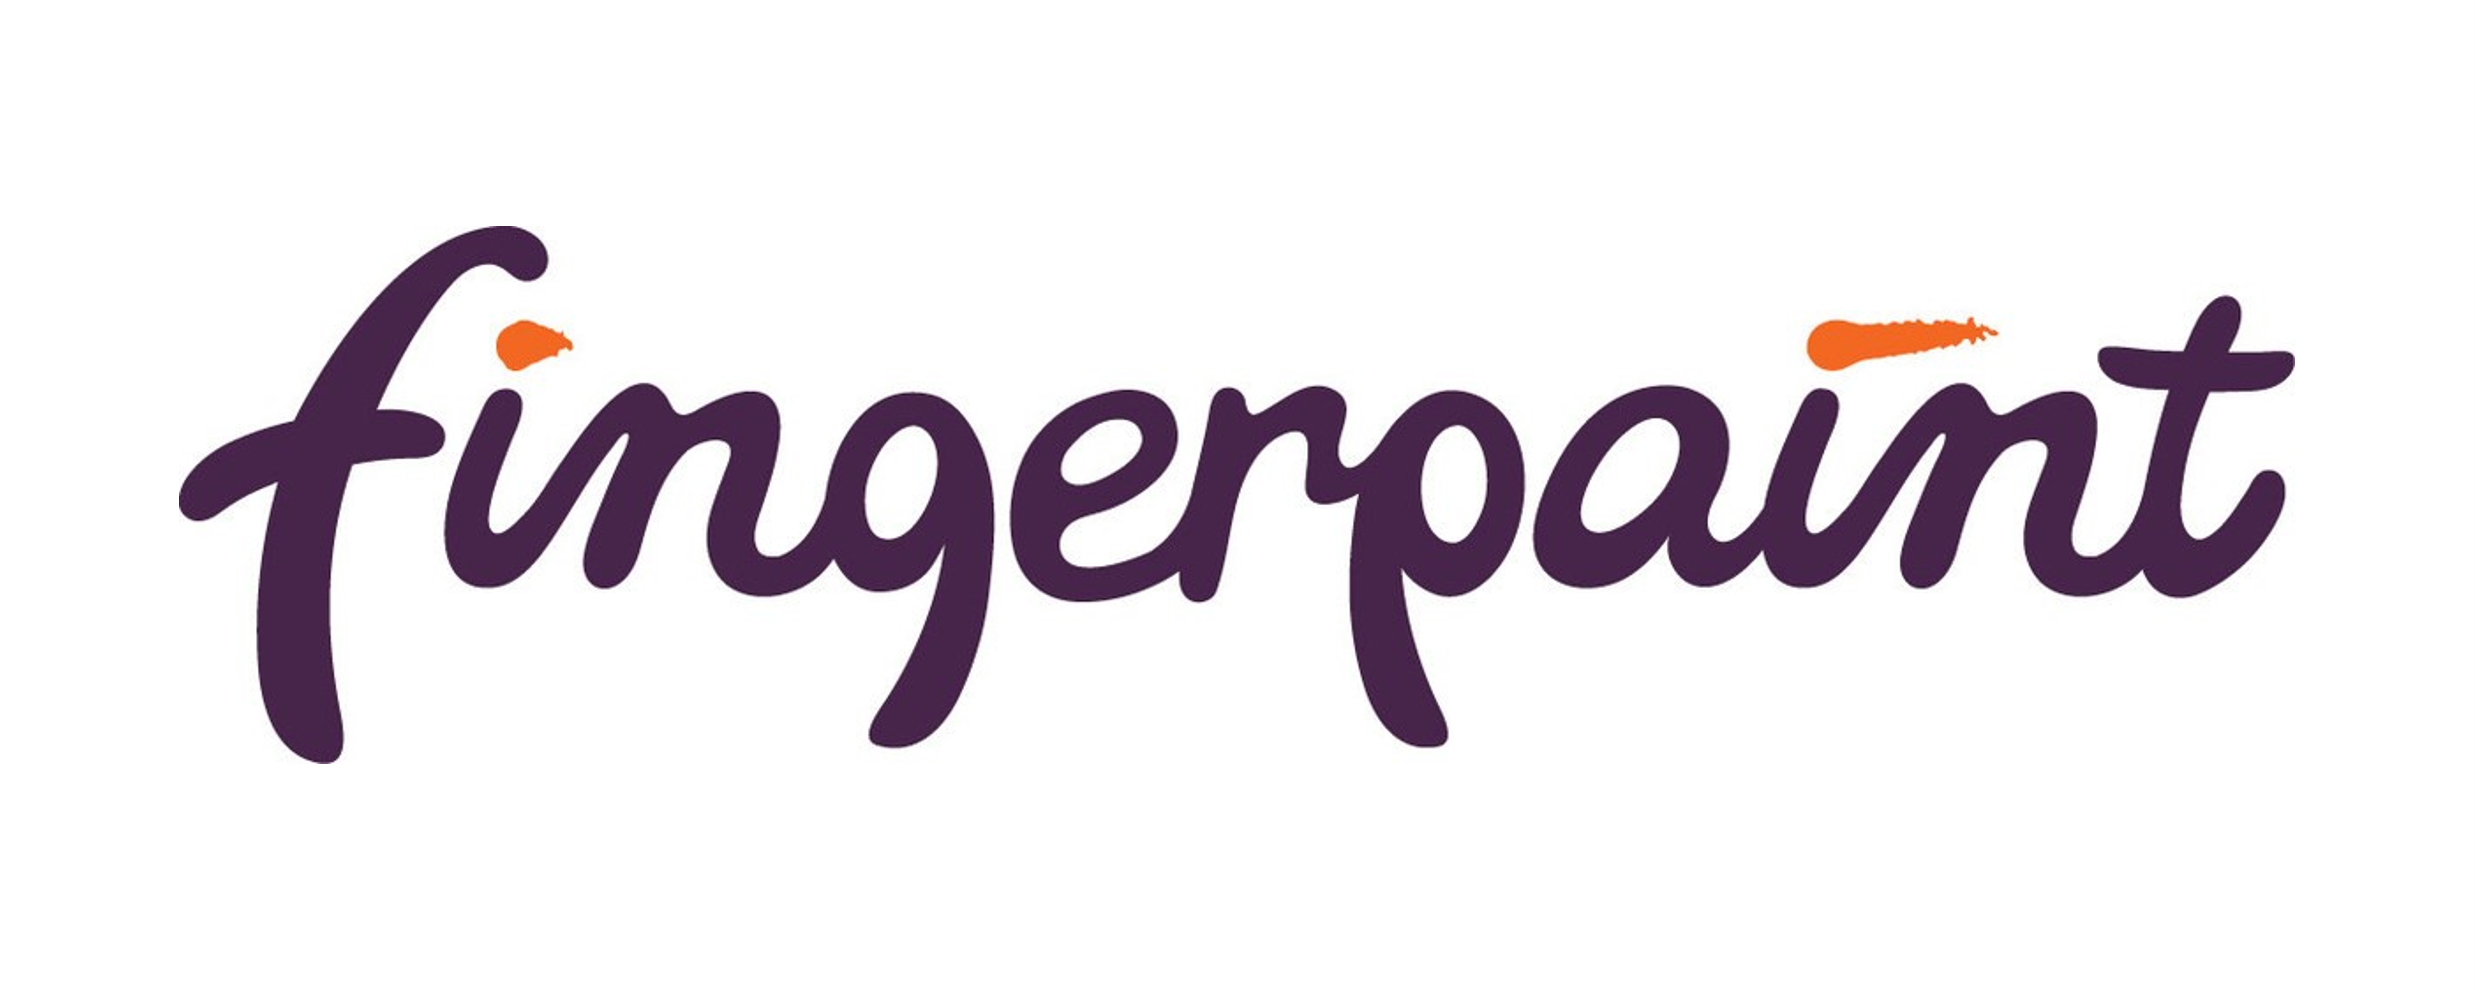 Fingerpaint logo